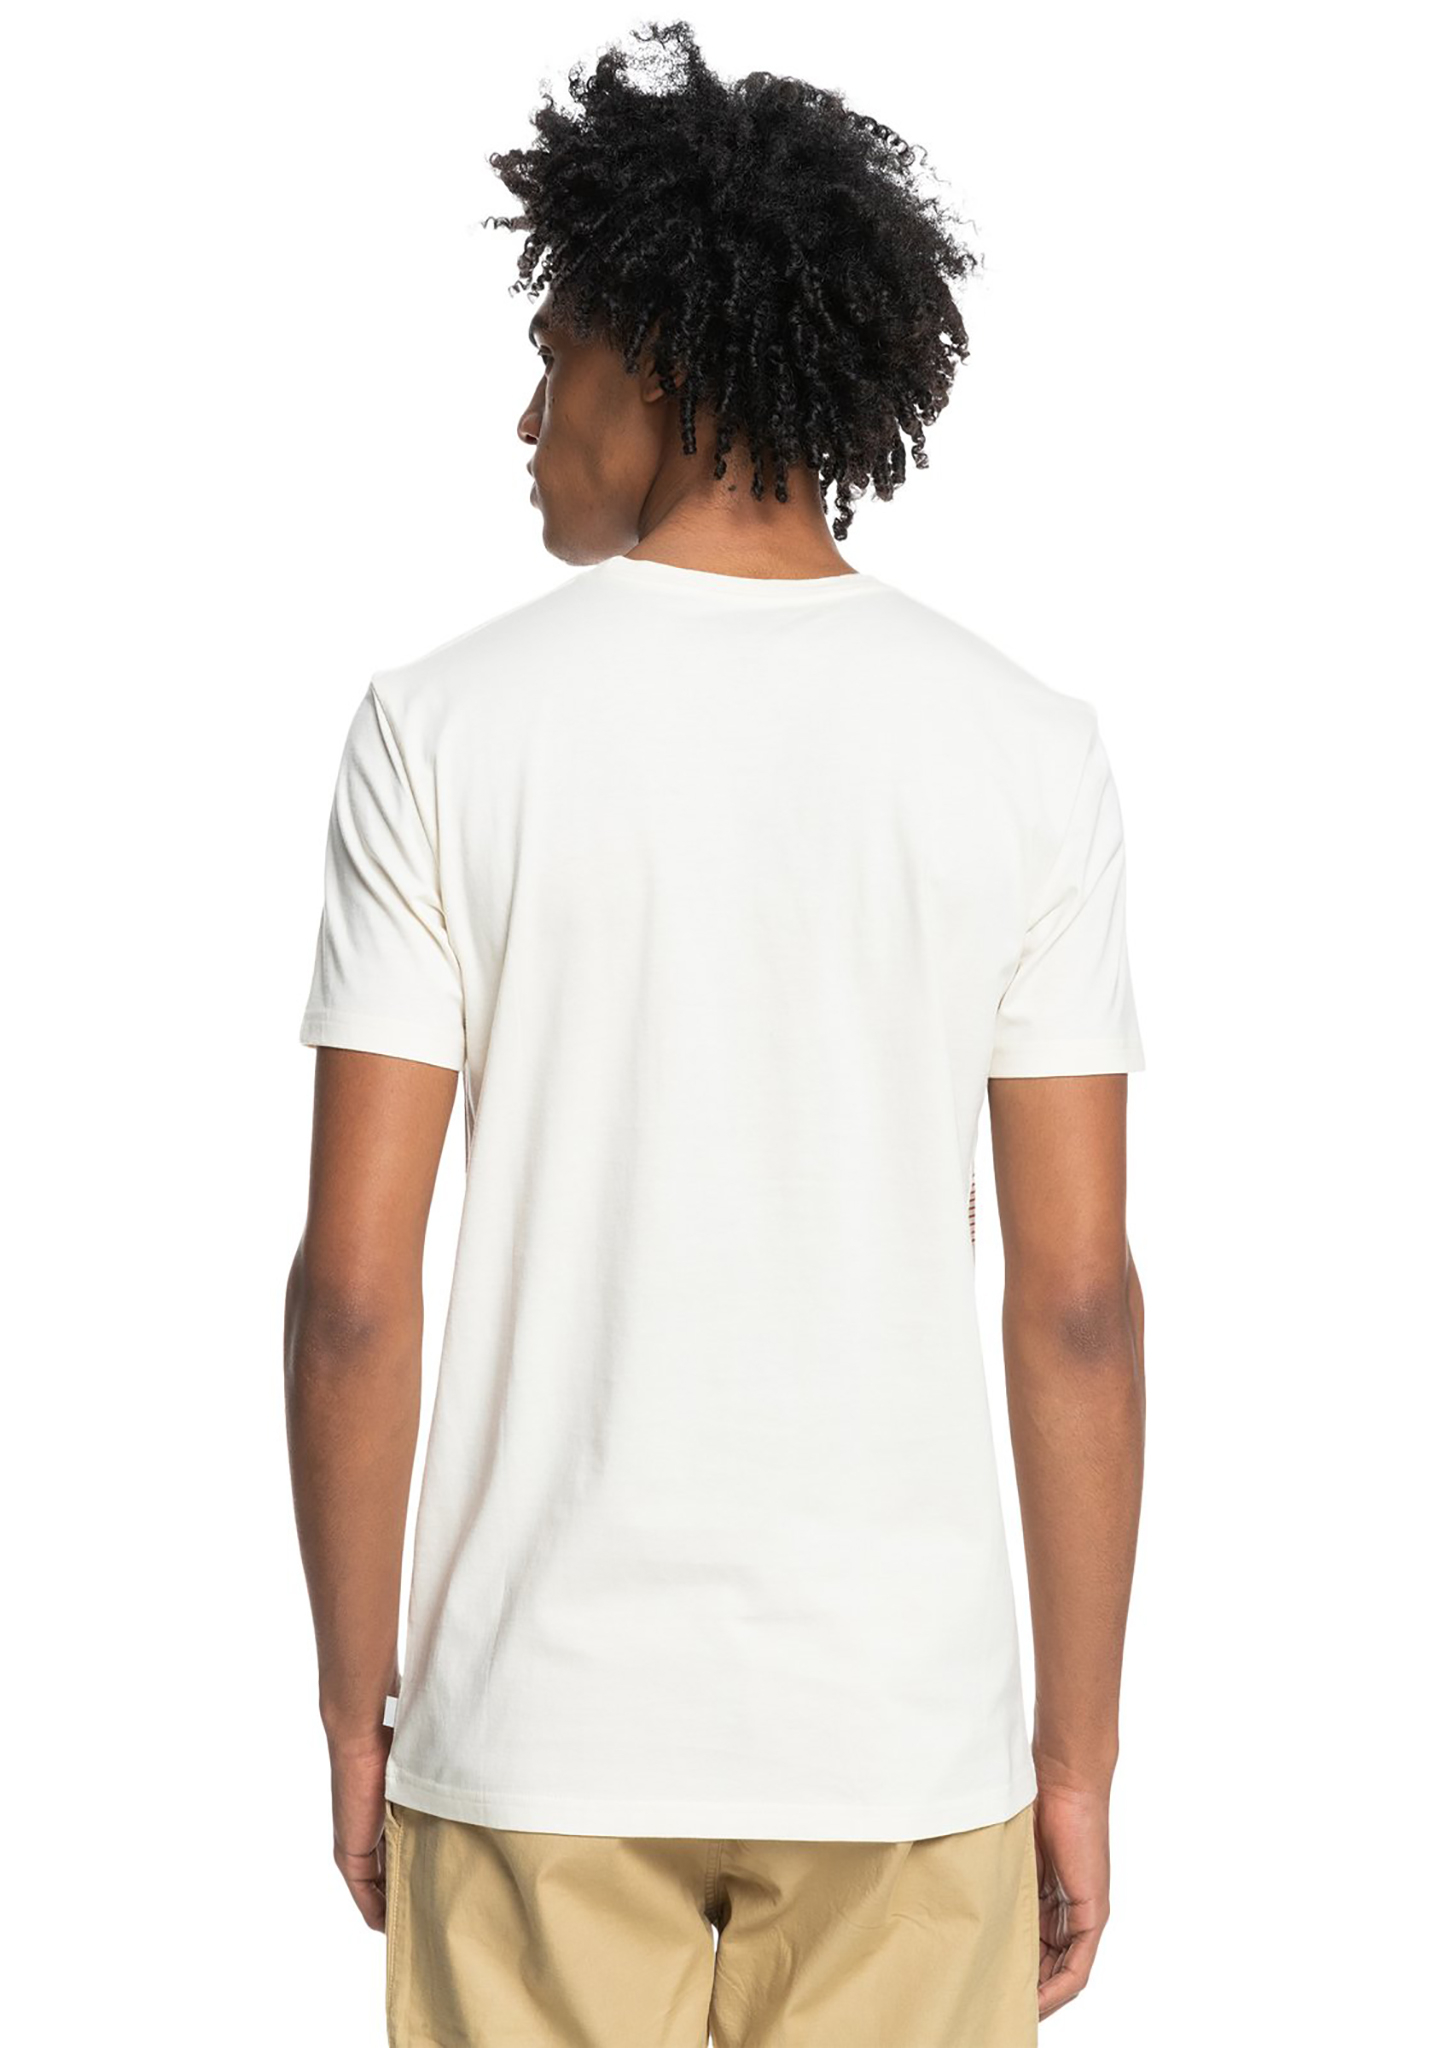 Feuchtigkeitsableitend DANISH ENDURANCE Merino T-Shirt für Herren Premium Thermo-Unterwäsche Technisches Activewear-T-Shirt aus Merinowolle Juckfrei Temperaturregulierend Atmungsaktiv 